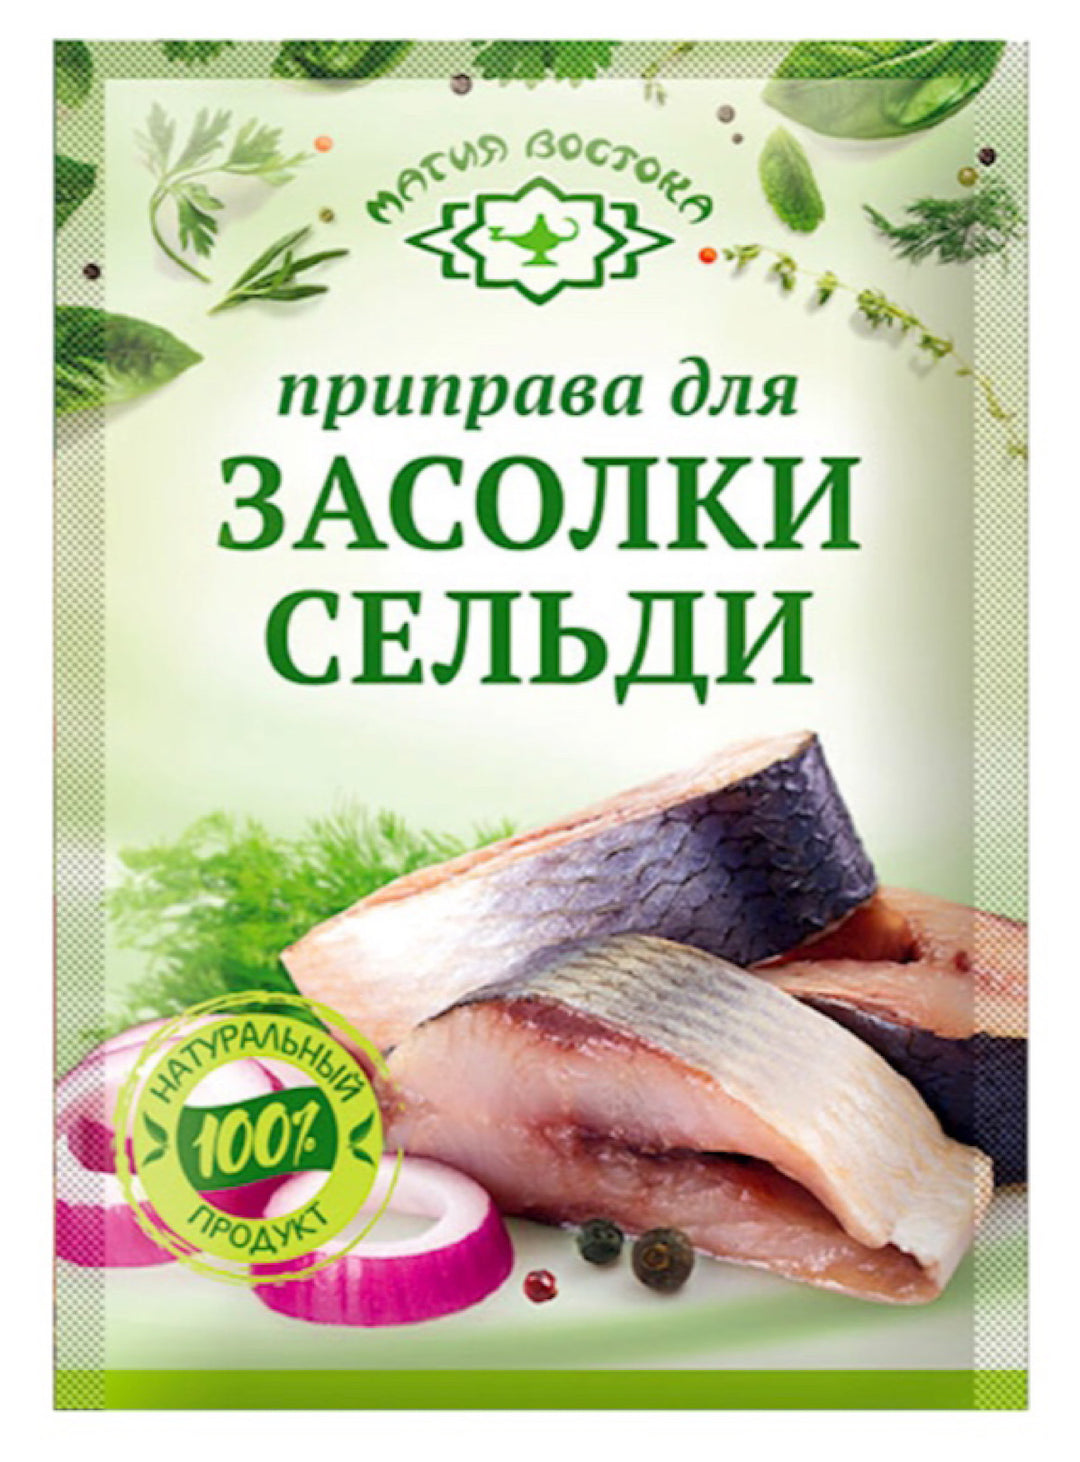 Herring Marinating Spices- Magiya Vostoka - 15g